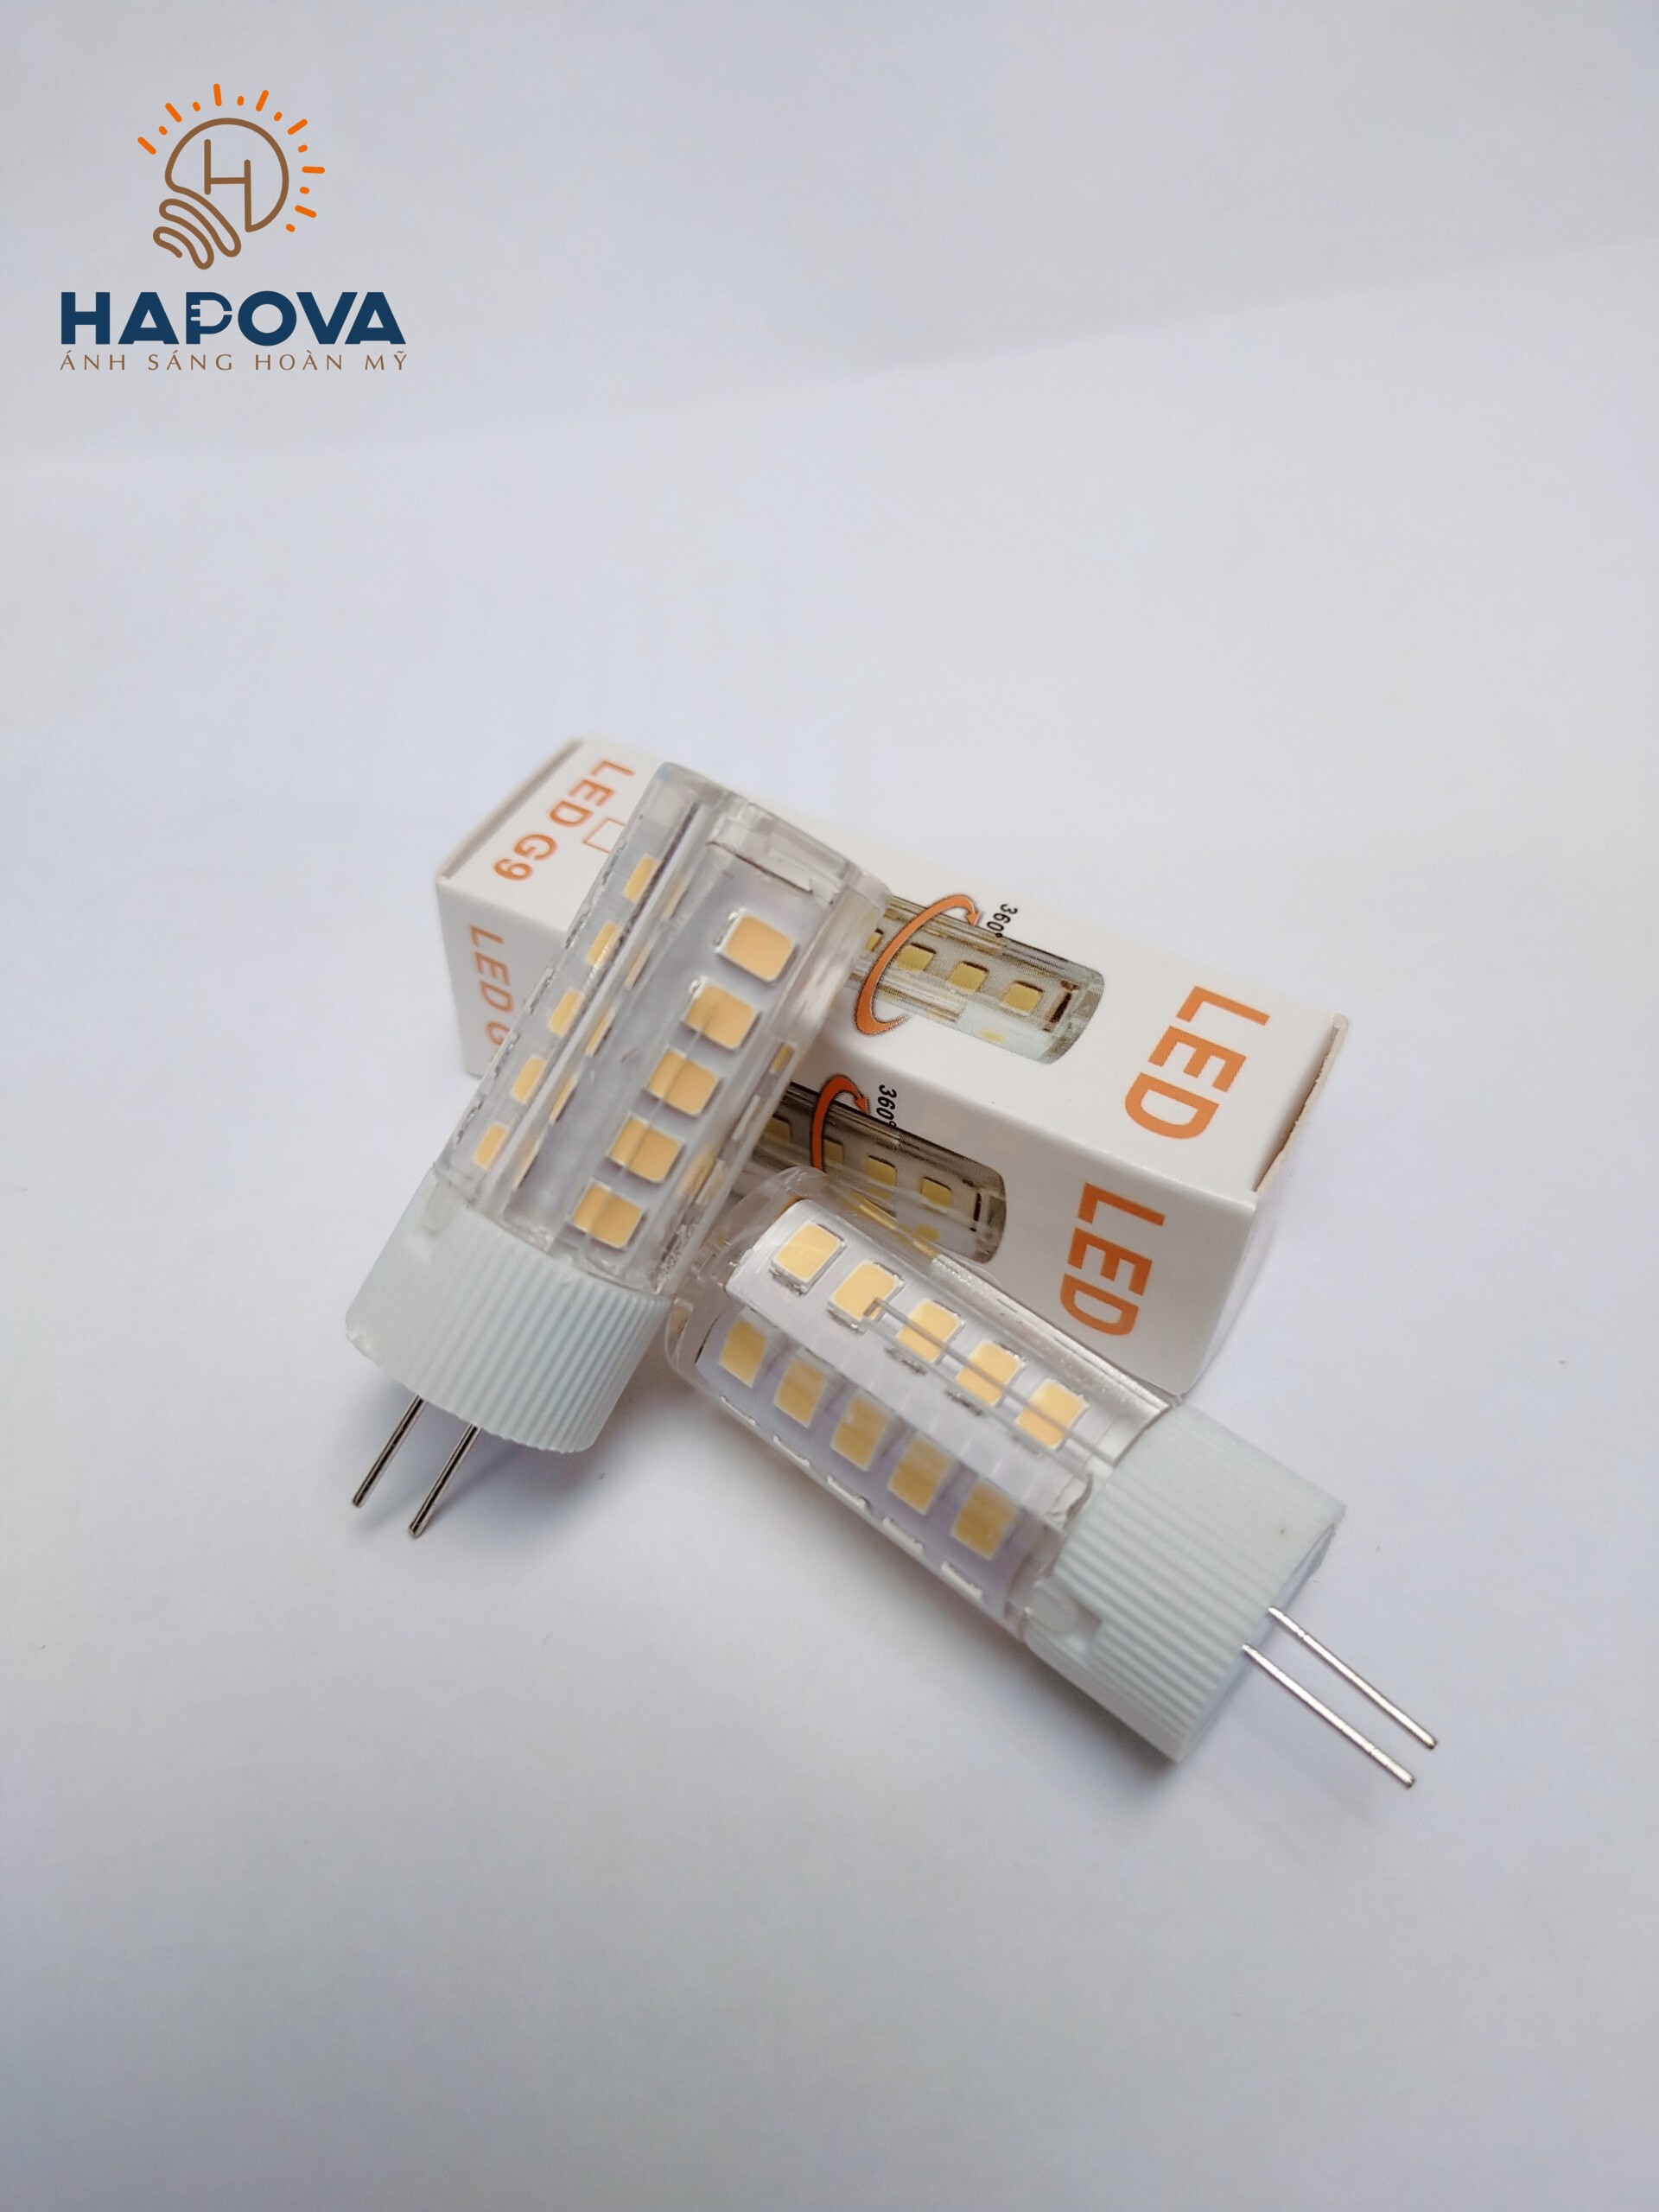 Bóng đèn LED ghim ngón HAPOVA EVIS G4 3W - 220V nhỏ gọn tiện dụng. LED chân kim cho đèn trang trí